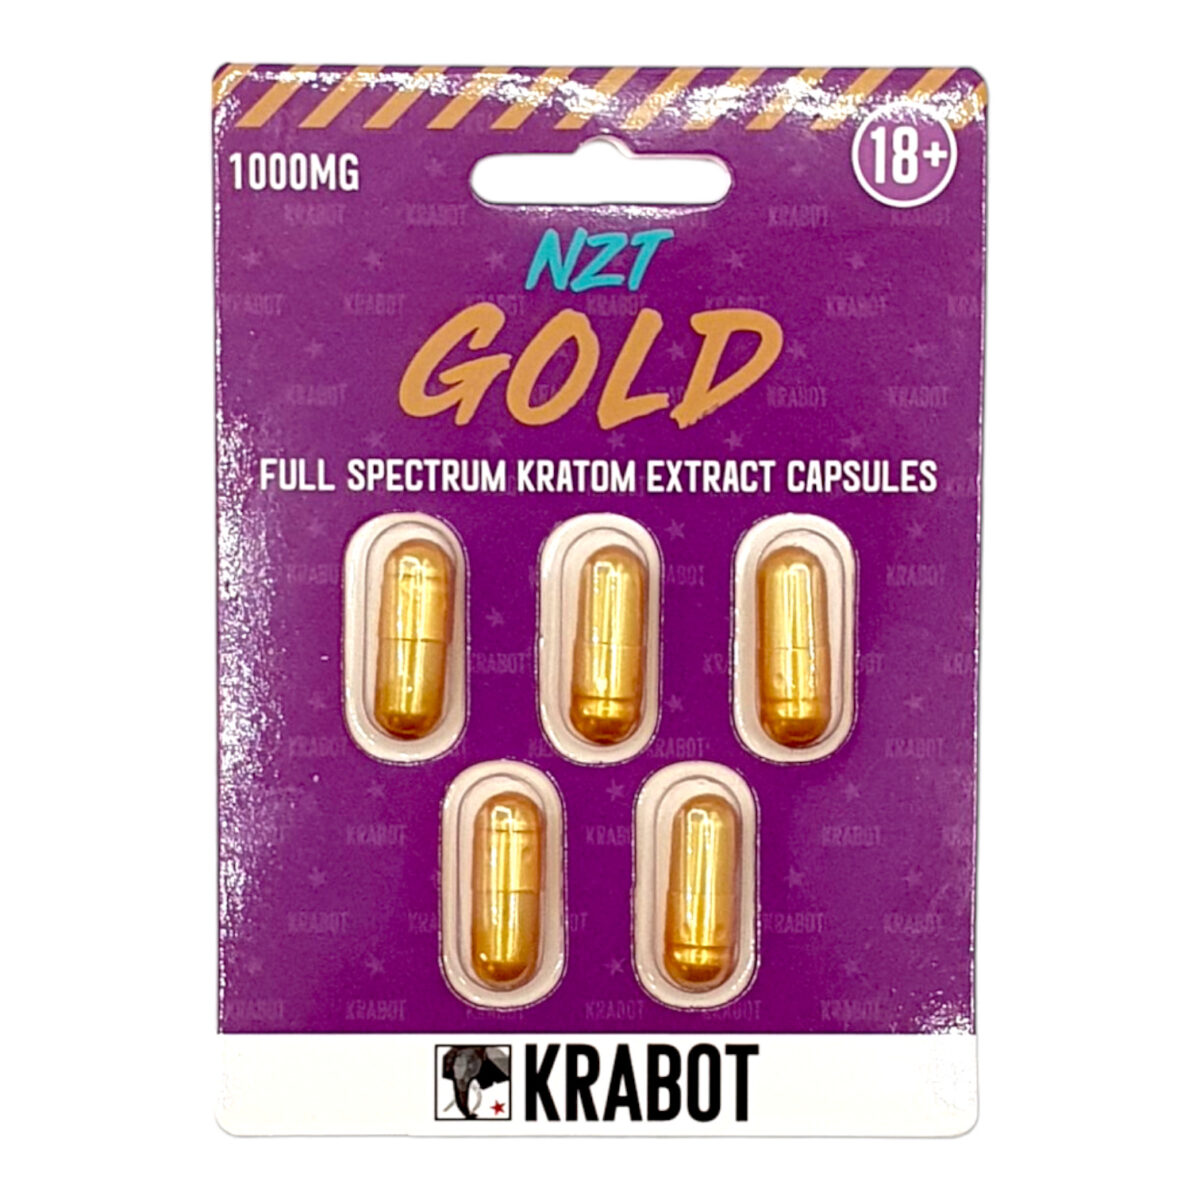 KRABOT NZT Gold Full Spectrum Capsules